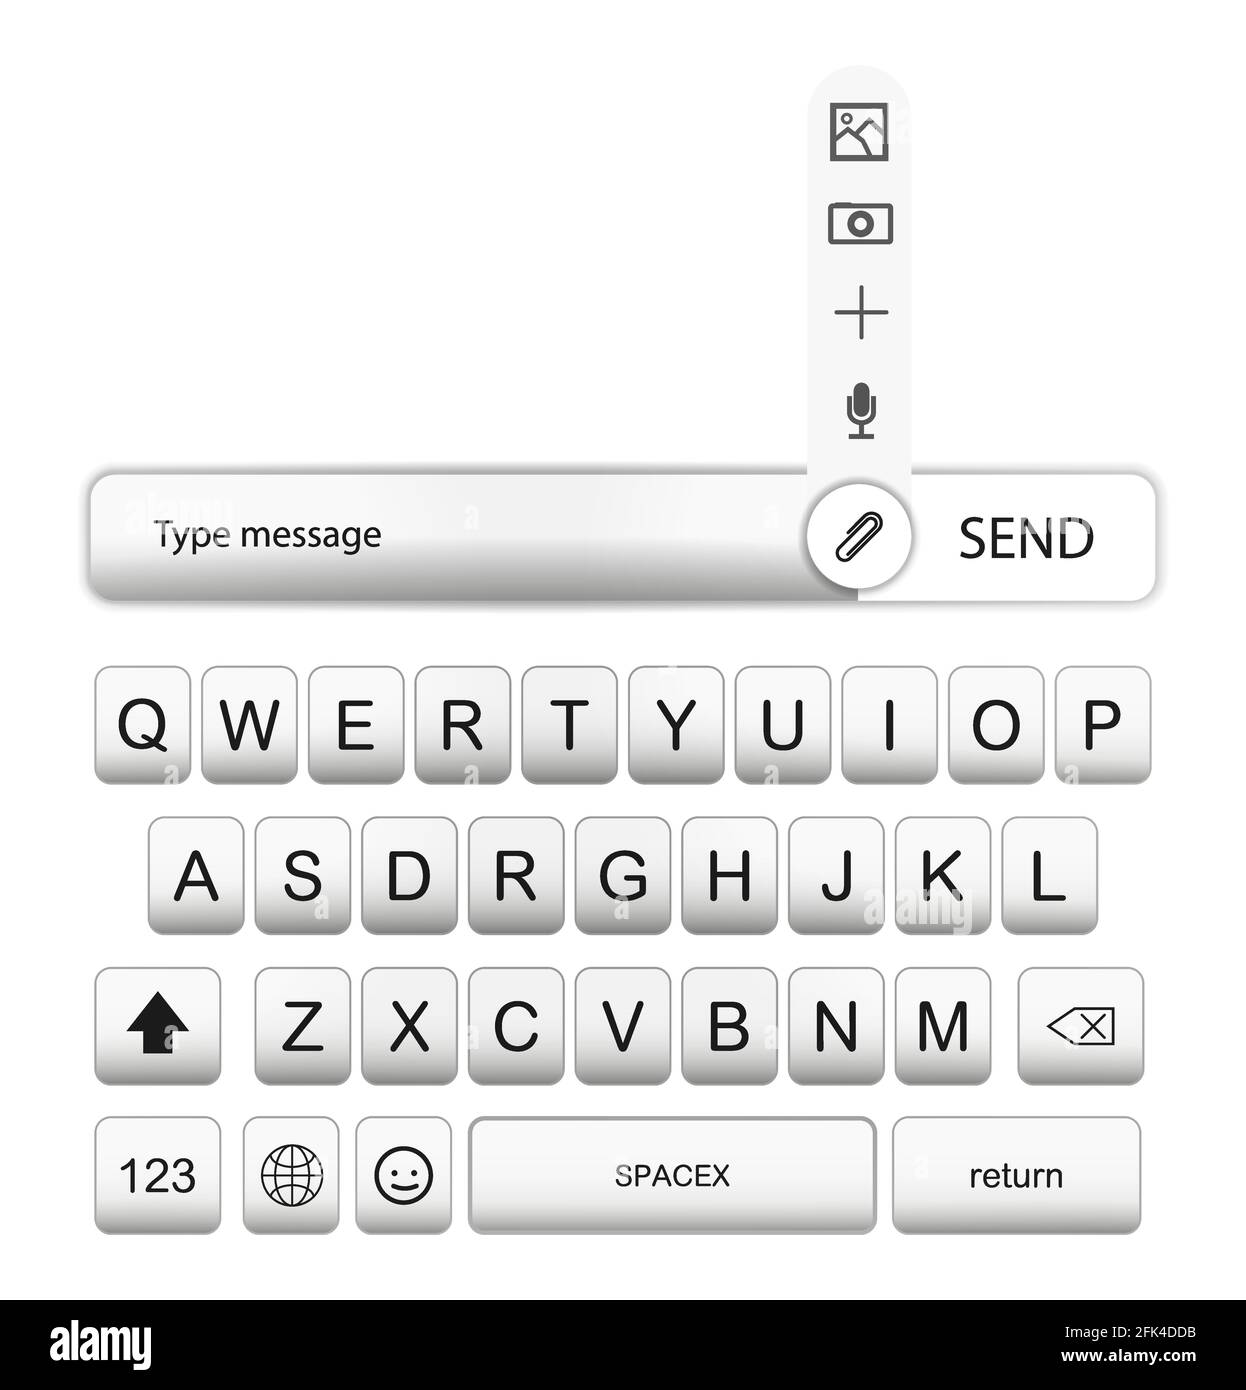 UI-Tastatur für Mobiltelefon, Smartphone. Weiße realistische Handy-Tasten  mit Schatten. Alphabet, Zahlen und Symbole für Messenger. UI-UX-KIT  Stock-Vektorgrafik - Alamy